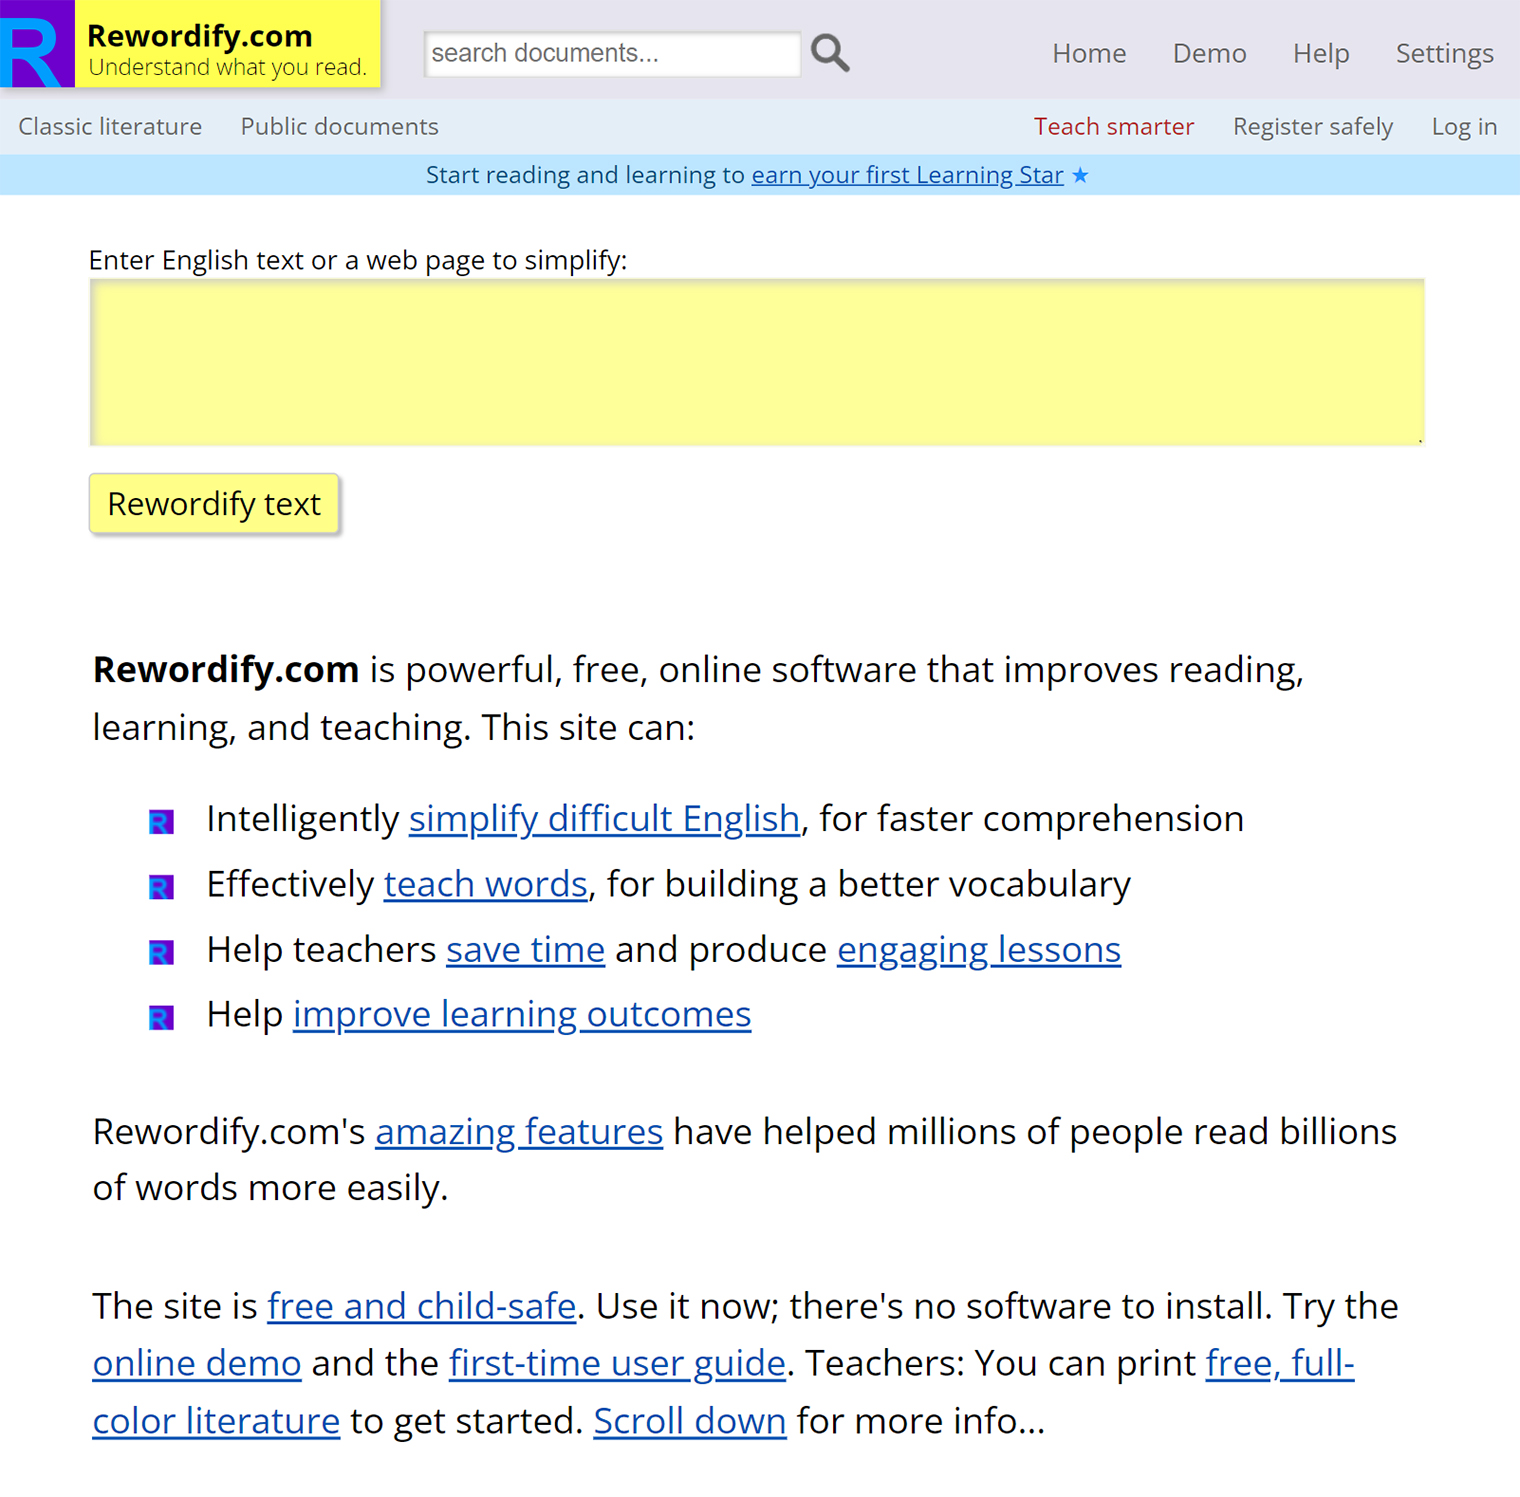 Так выглядит главная страница сервиса Rewordify. Ее дизайн заставляет вспомнить об онлайн⁠-⁠порталах из 2000⁠-⁠х